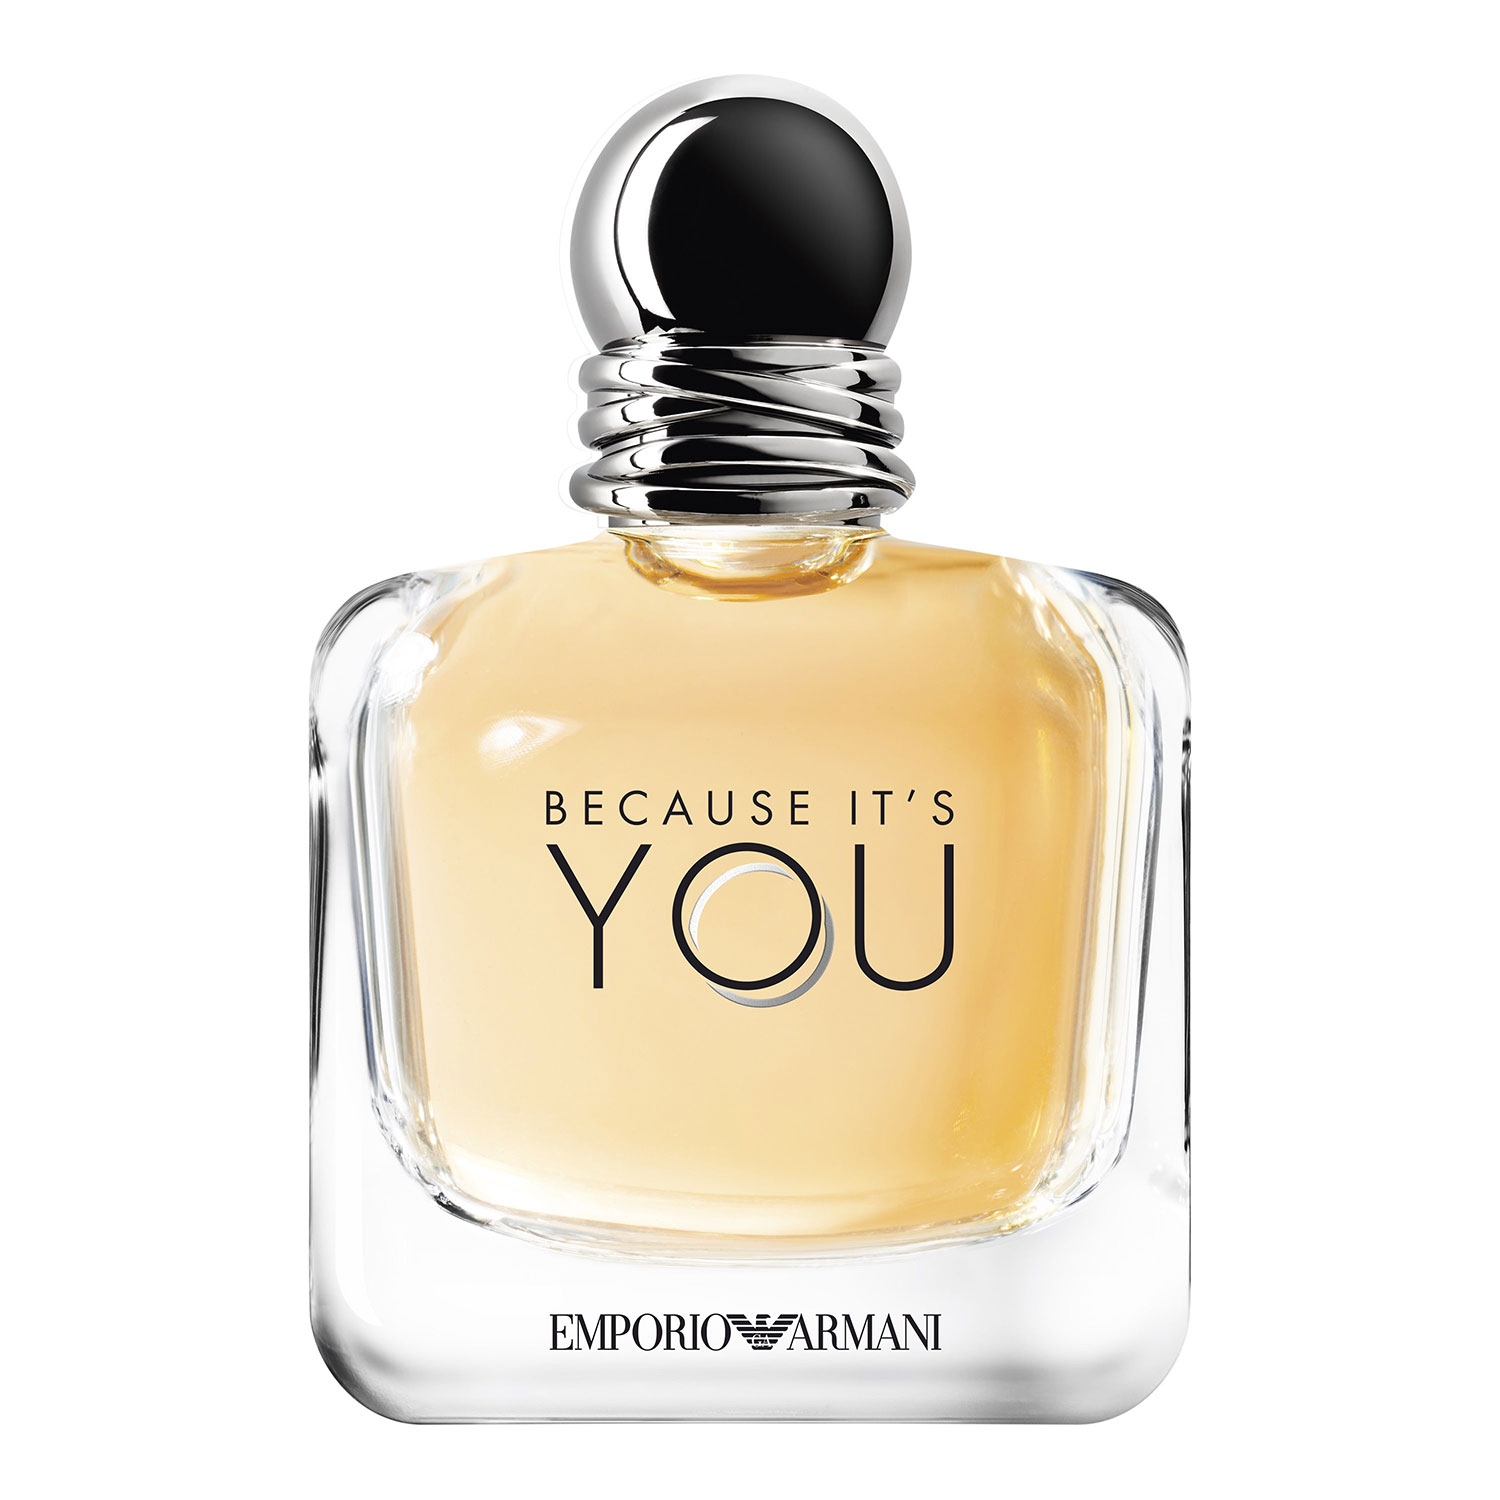 Produktbild von Emporio Armani - Because it's YOU Eau de Parfum